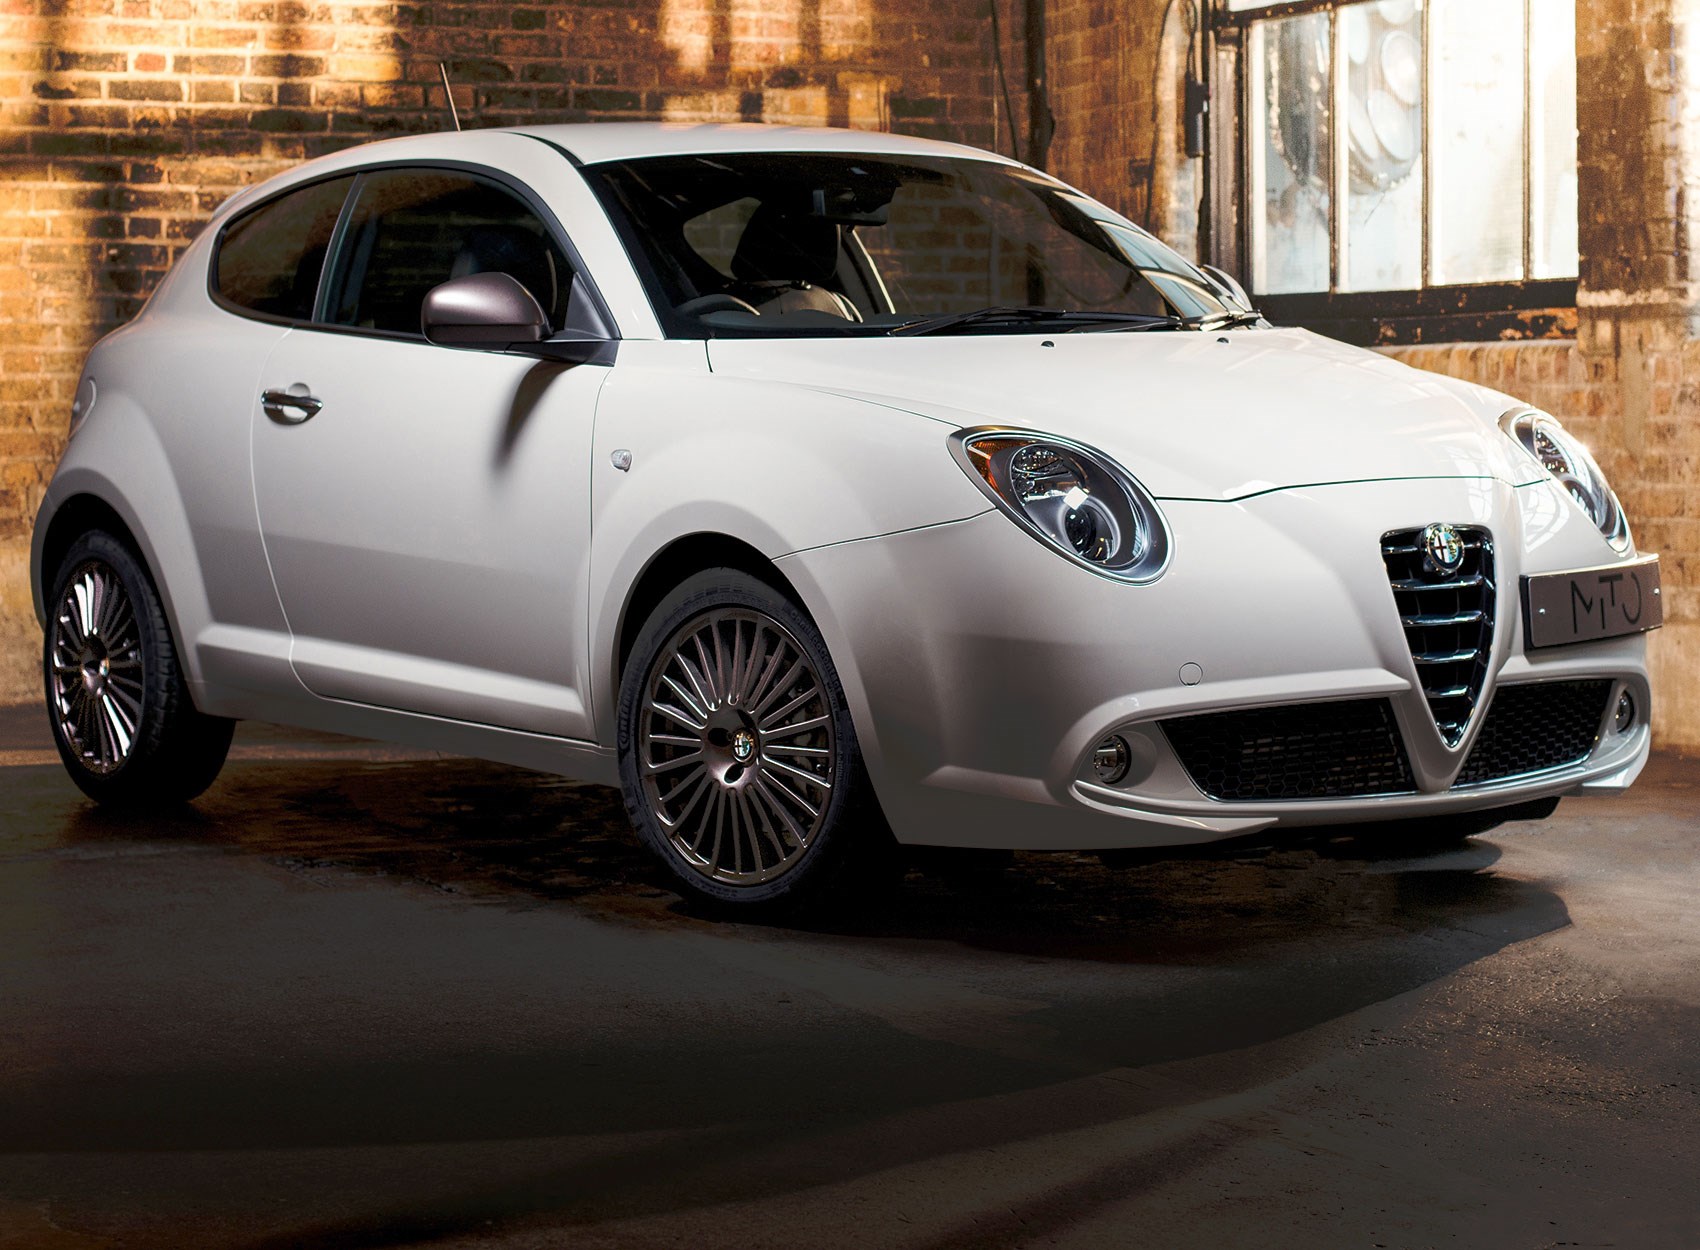 New Alfa Romeo Mito Now Available